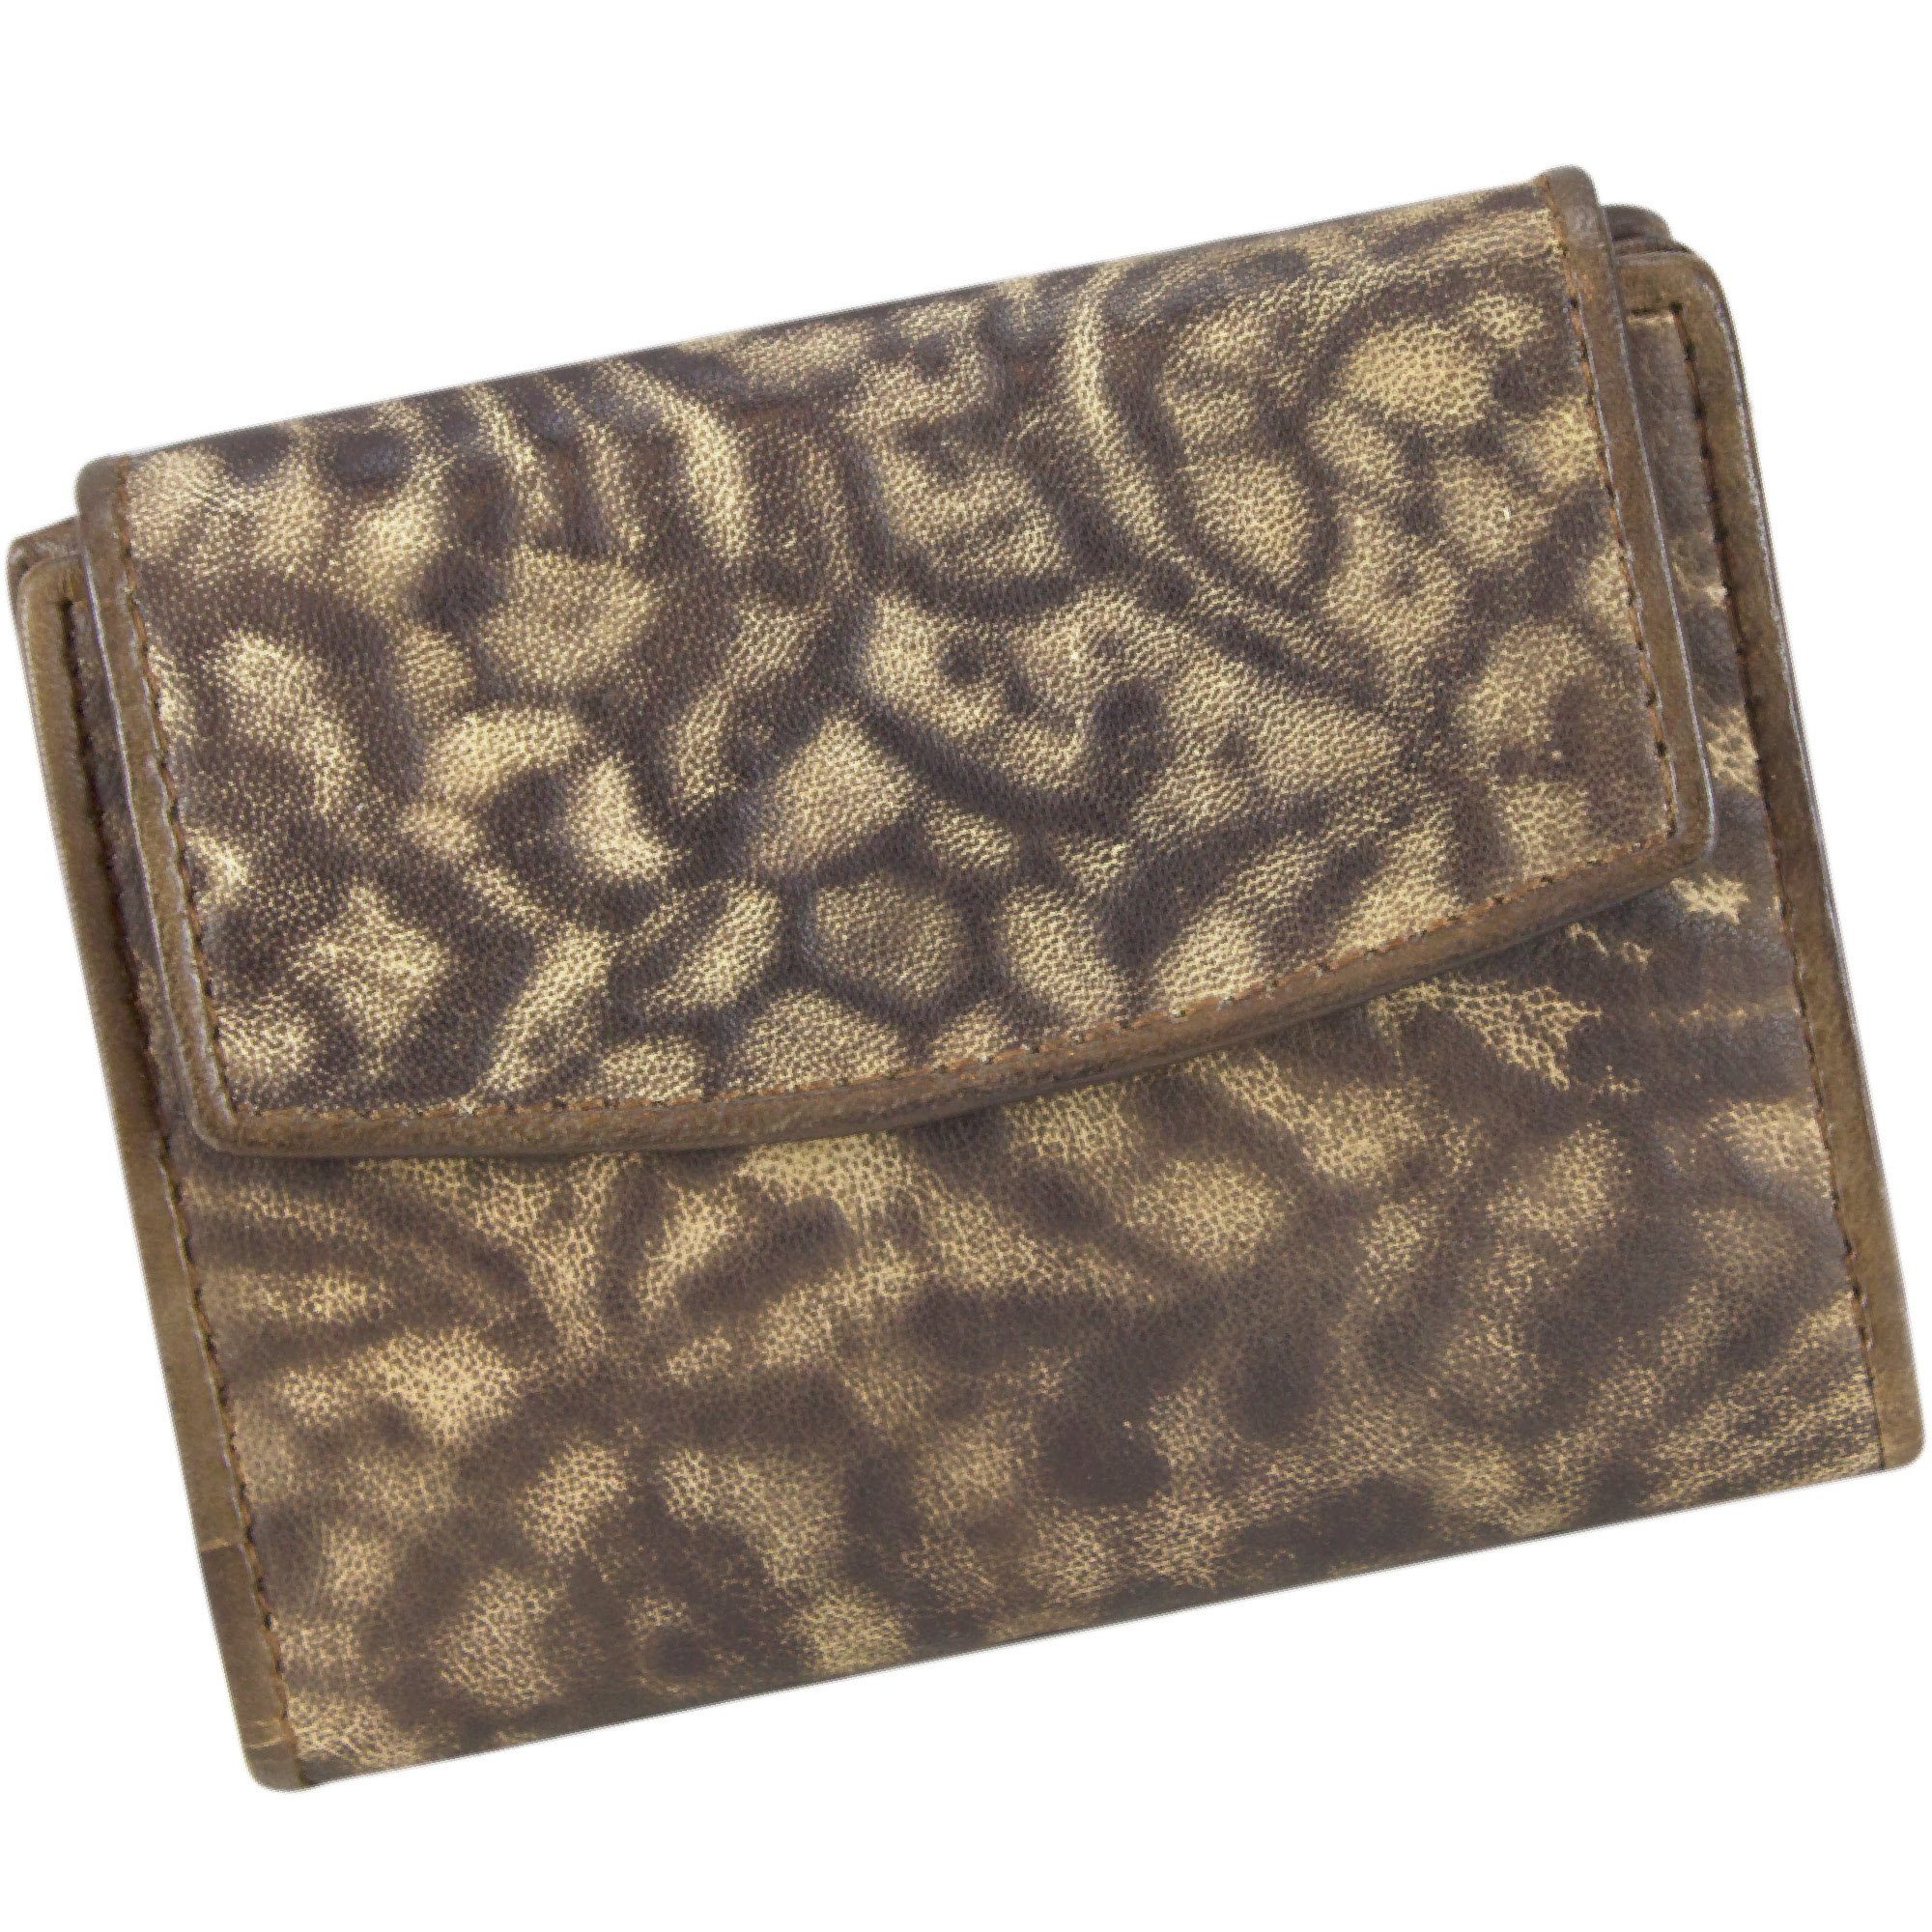 Sunsa Geldbörse Kleine Leder Geldbeutel Vintage Portemonnaie Brieftasche Damen, echt Leder, Vintage Style, mit RFID-Schutz, zeitlos braun